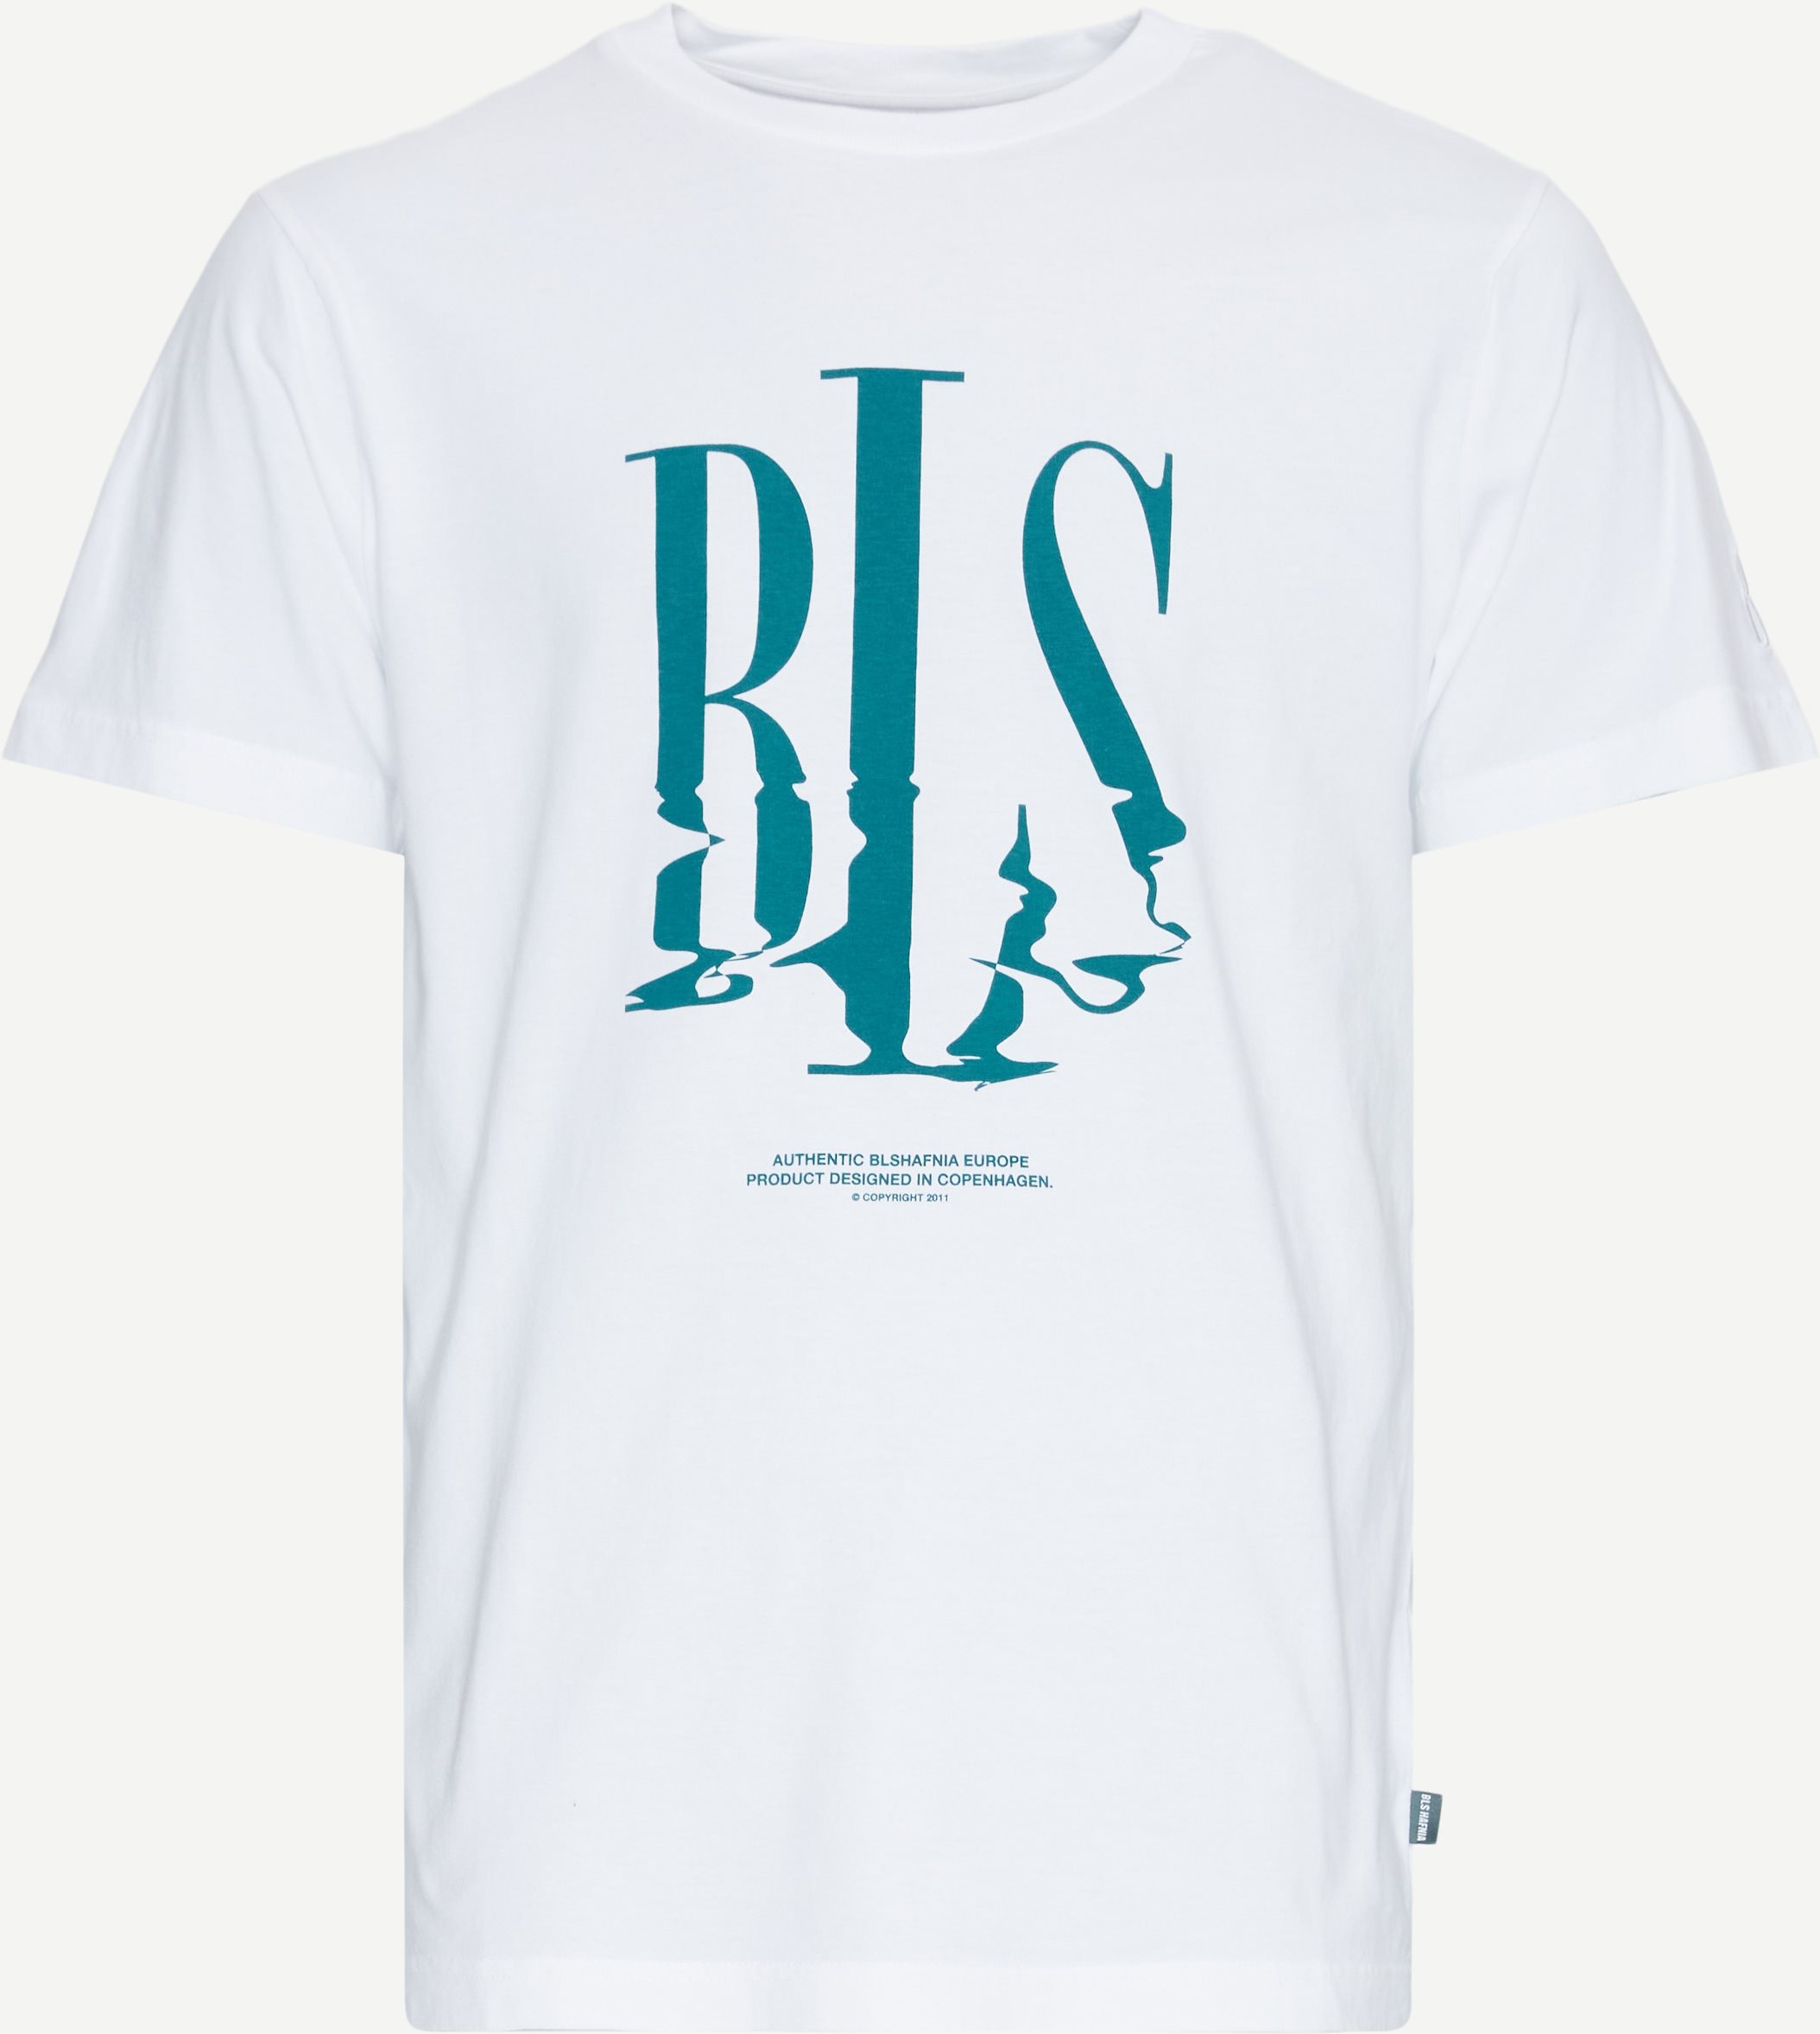 BLS T-shirts NORTHSEA CAPITAL T-SHIRT 202403012 Hvid